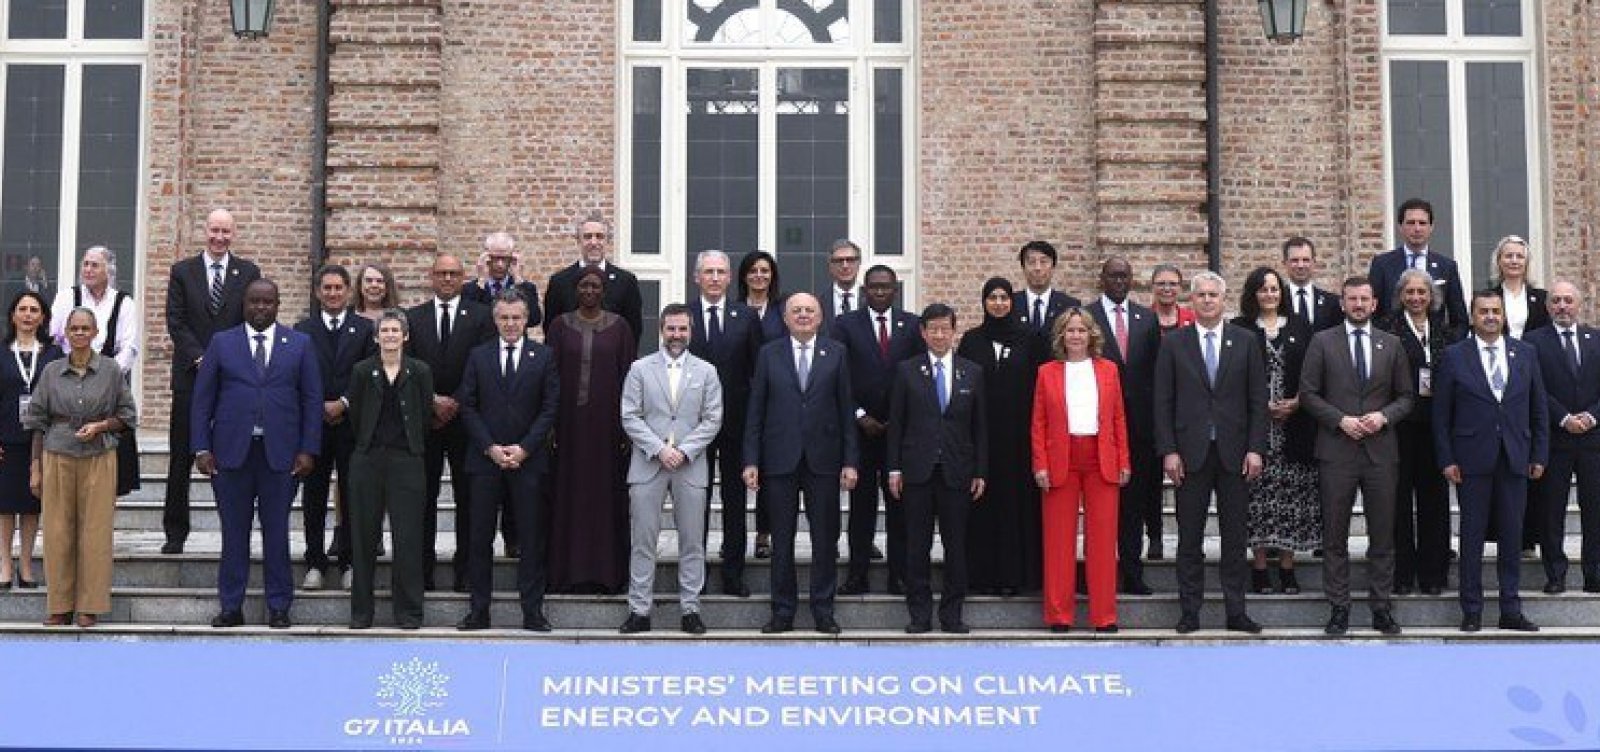 Marina Silva cobra financiamento de países ricos em reunião do G7 sobre mudanças climaticas